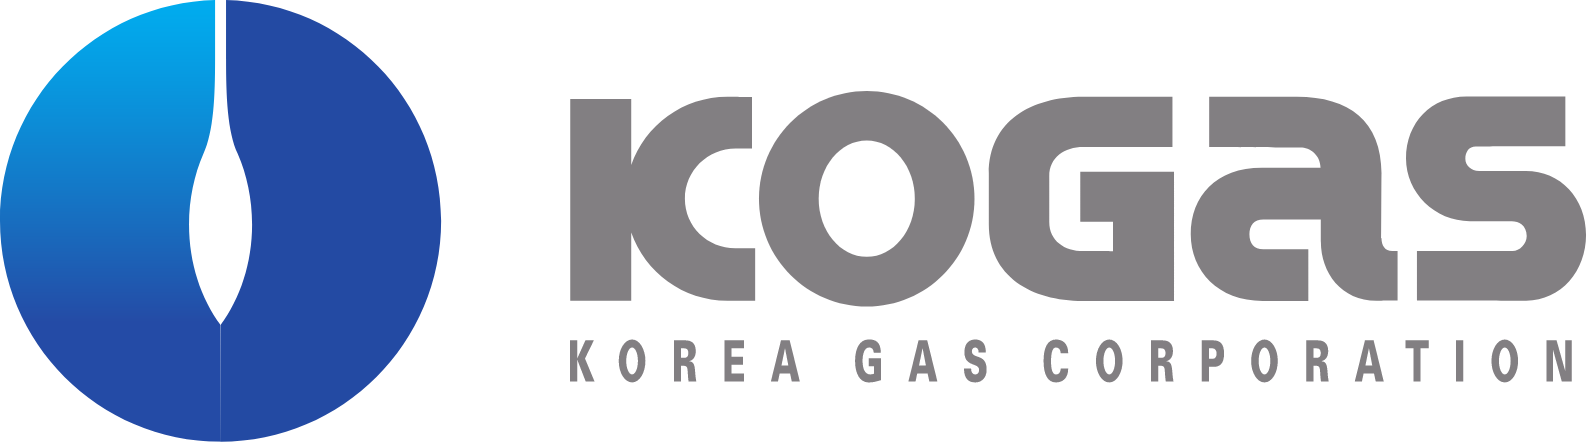 Korea Gas logo large (transparent PNG)